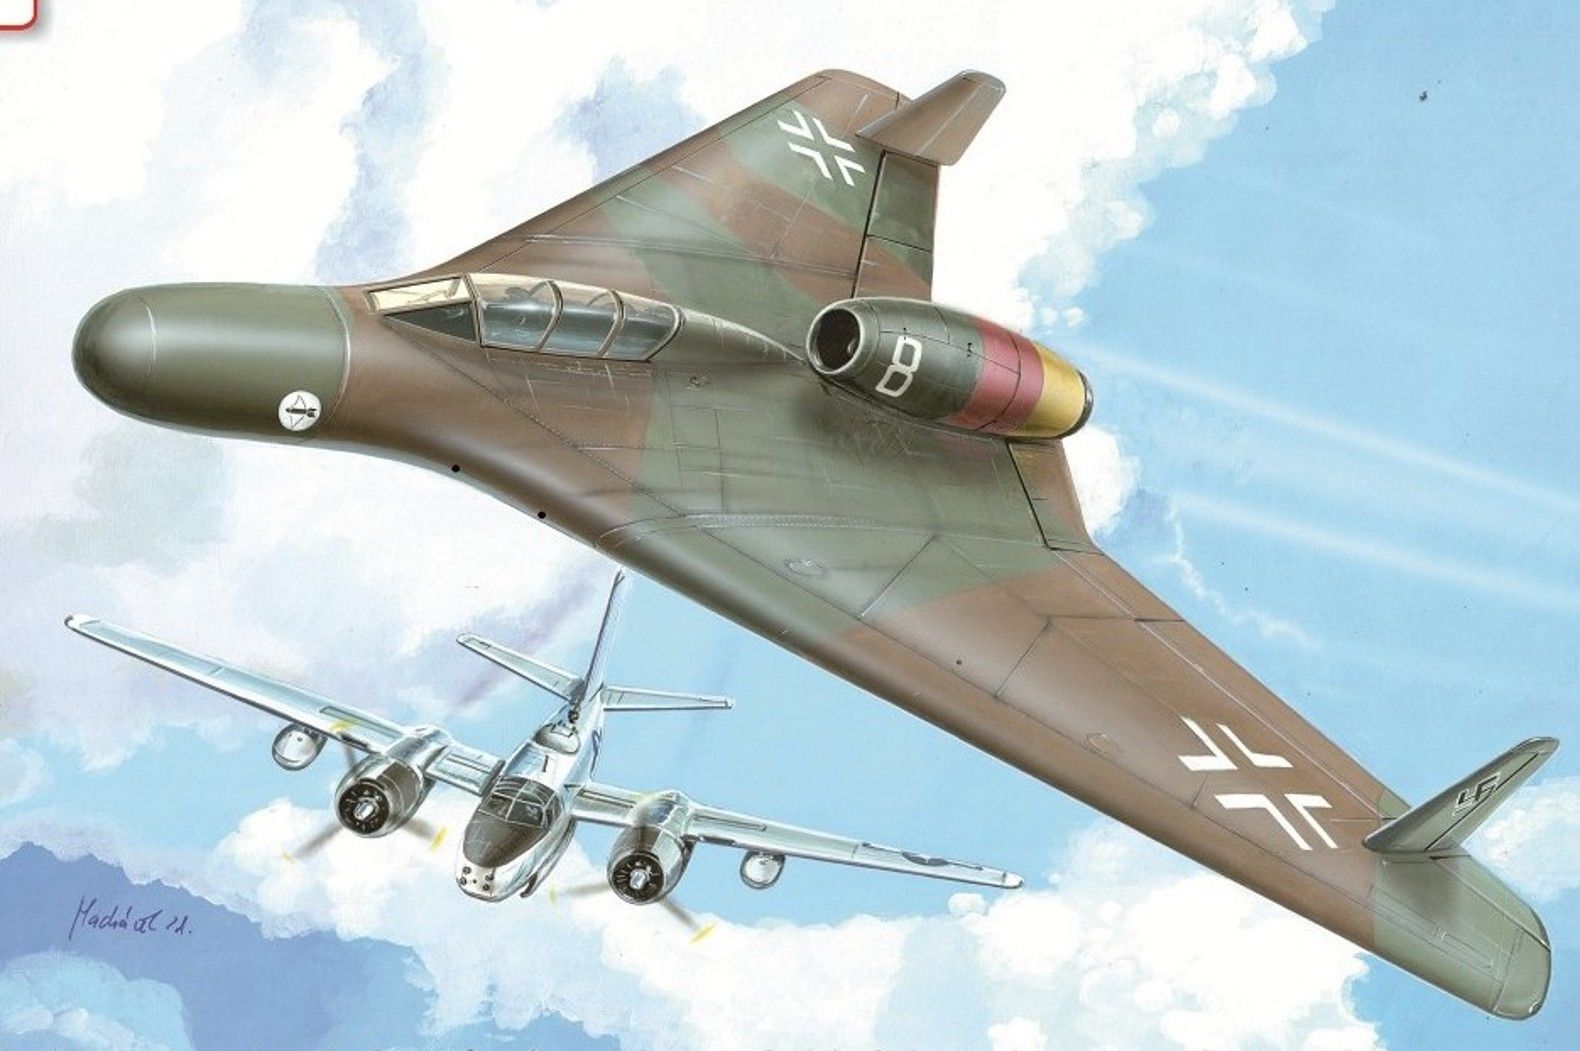 Gohta_P-60_c-1 | Aircraft of World War II - WW2Aircraft.net Forums